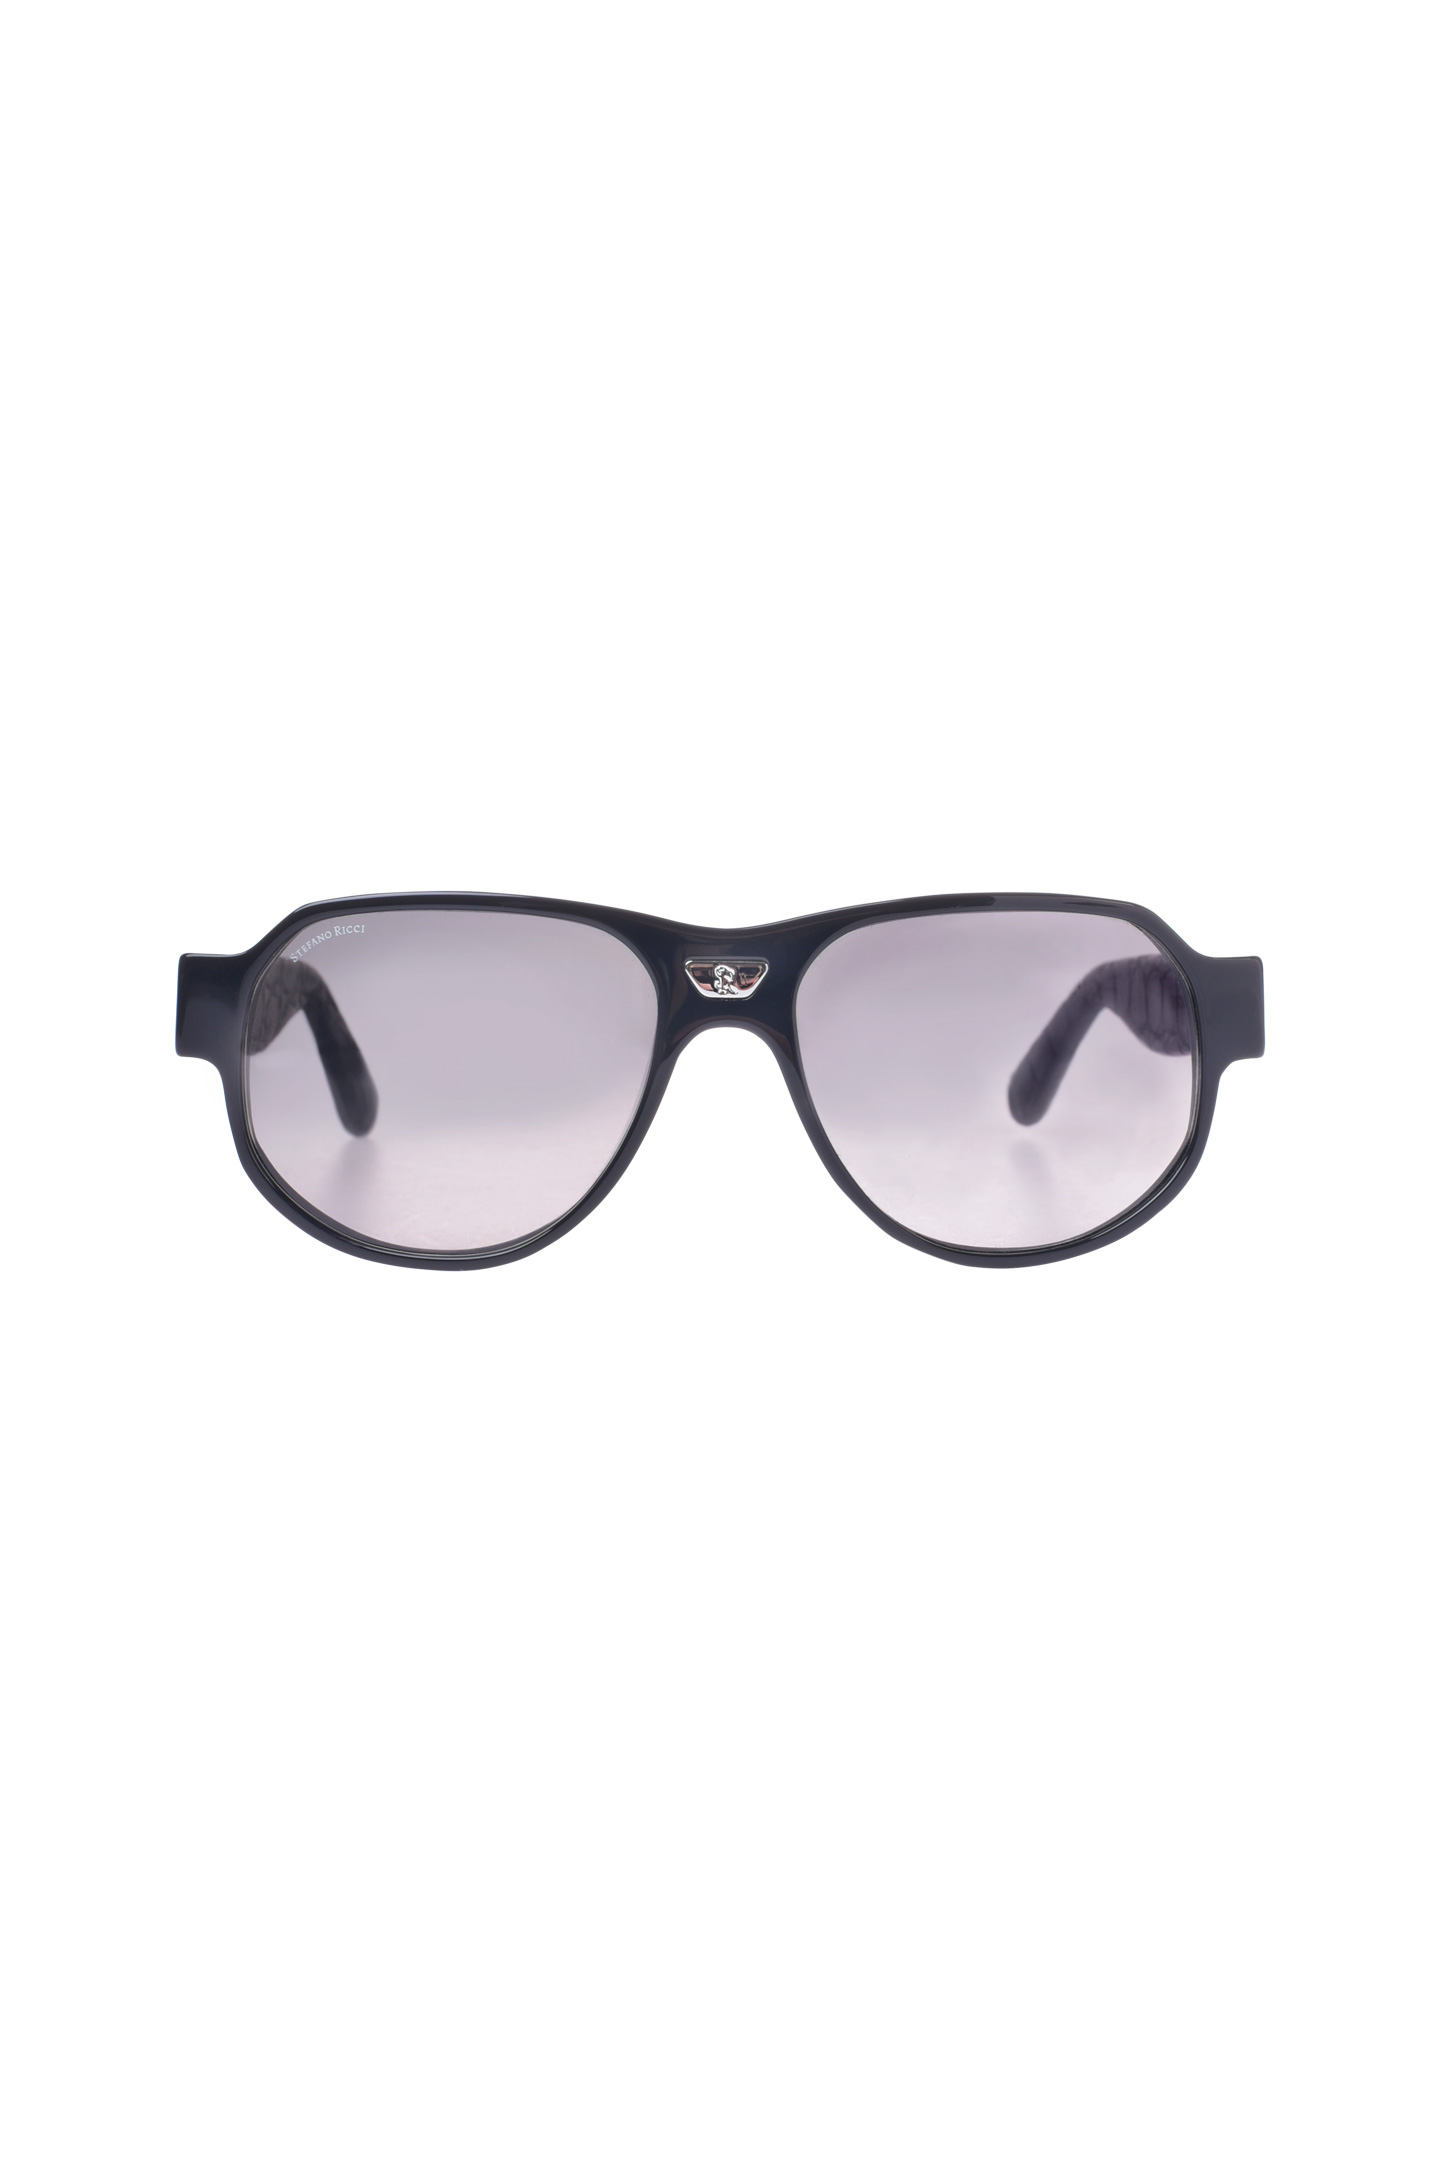 Солнцезащитные очки STEFANO RICCI SG001P CS SGBOXP VDCS, цвет: Черный, Мужской